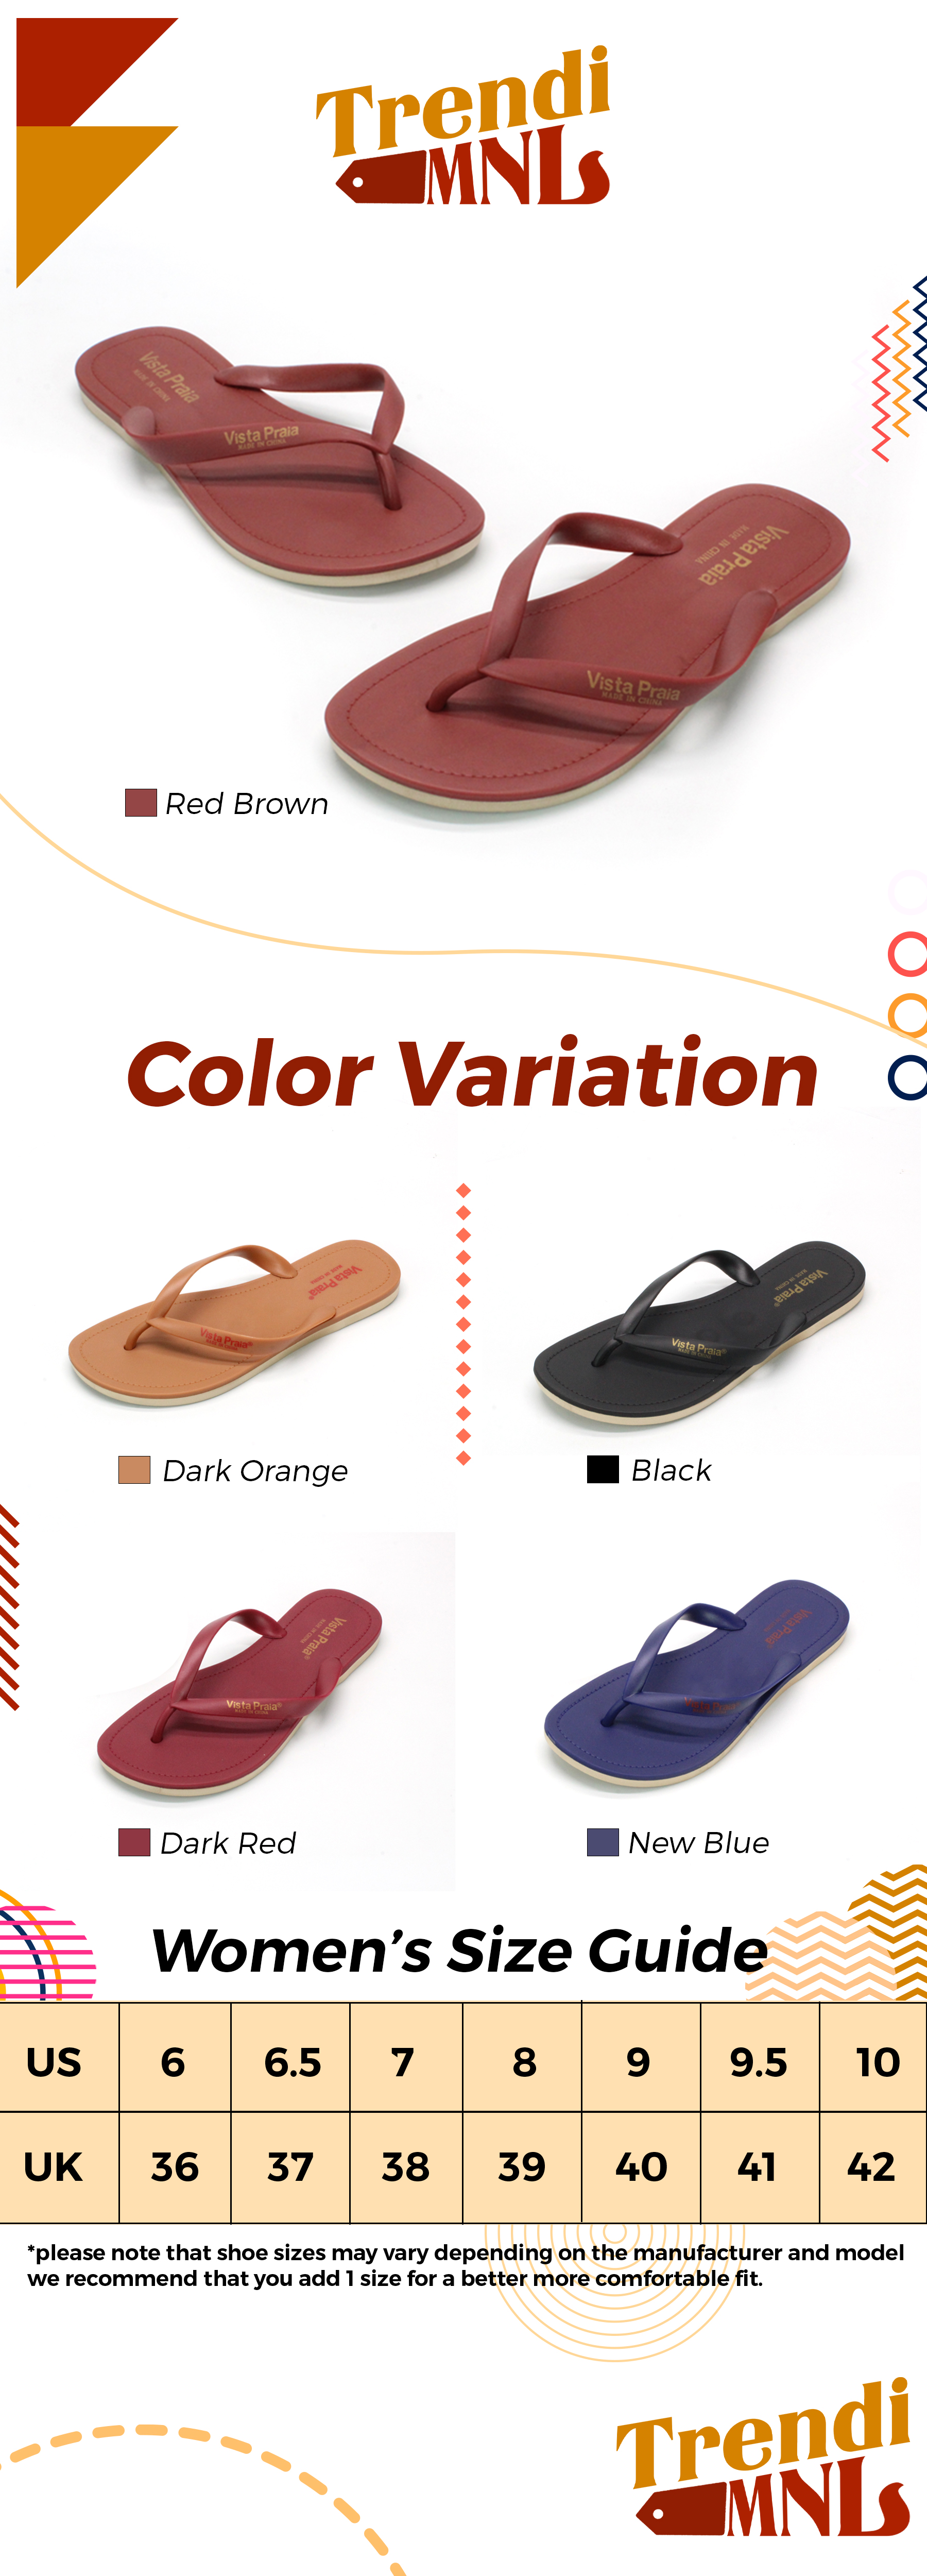 shoe slides manufacturer